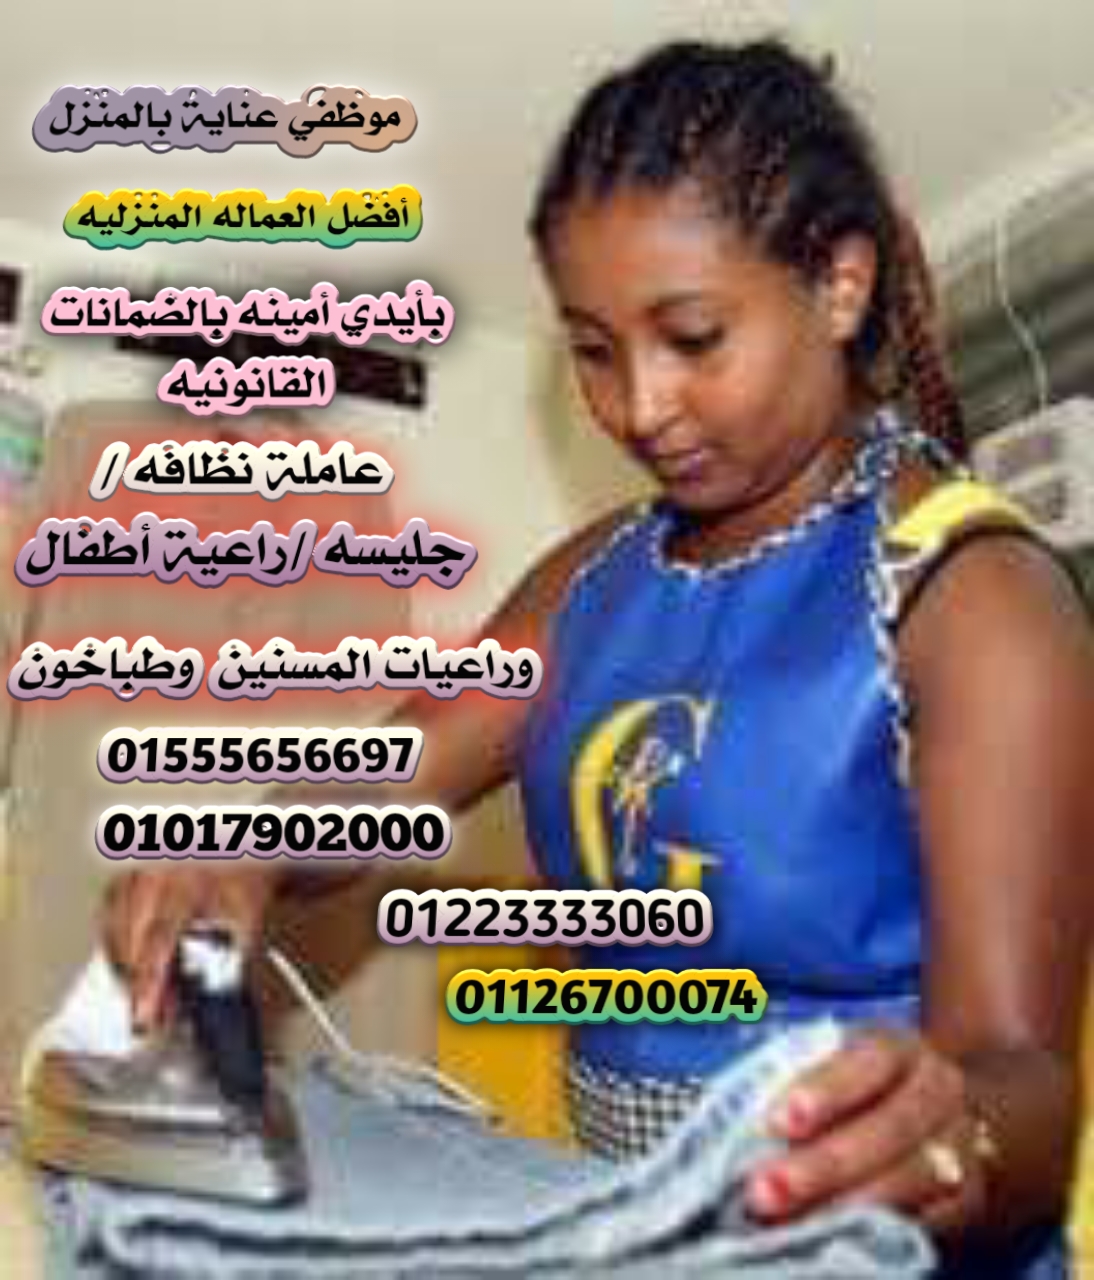 الوطنية لتوفير العمالة المنزلية المصرية والأجنبية بالضمانات 012223333060